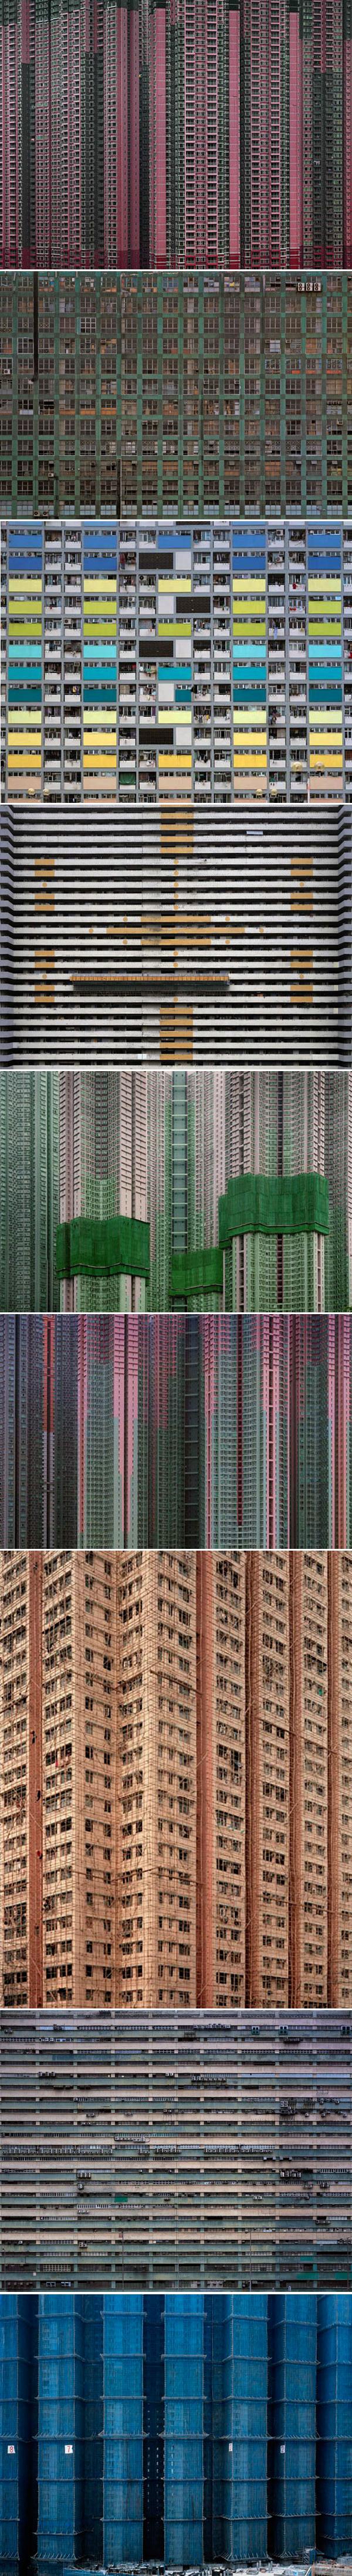 Впечатляющие фотографии Майкла Вольфа («Architecture of Density»)